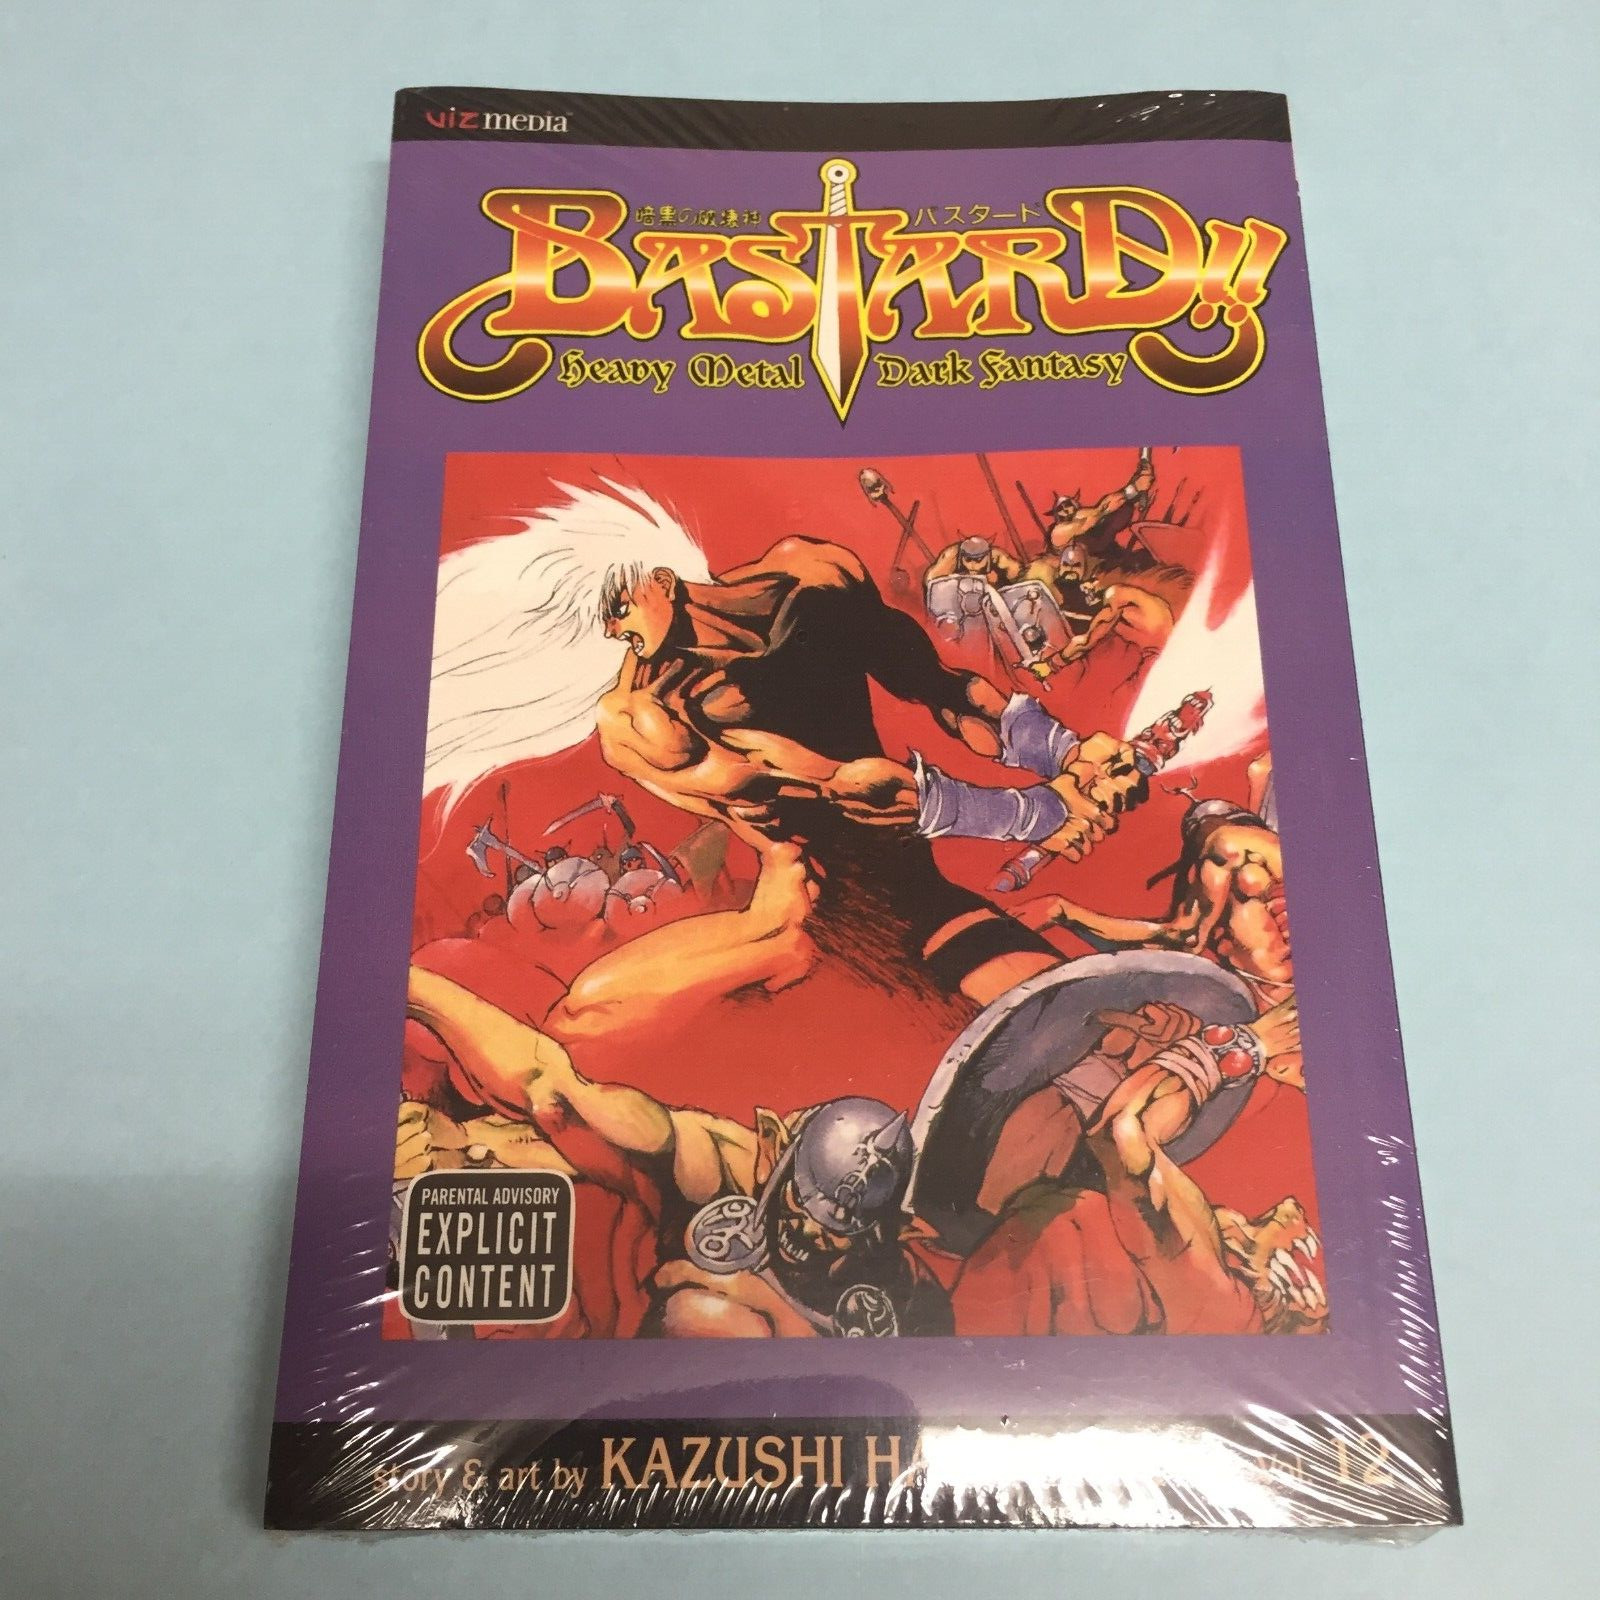 Bastard Volume 12 Manga English Kazushi Hagiwara Heavy Metal Dark Fantasy Vol 12